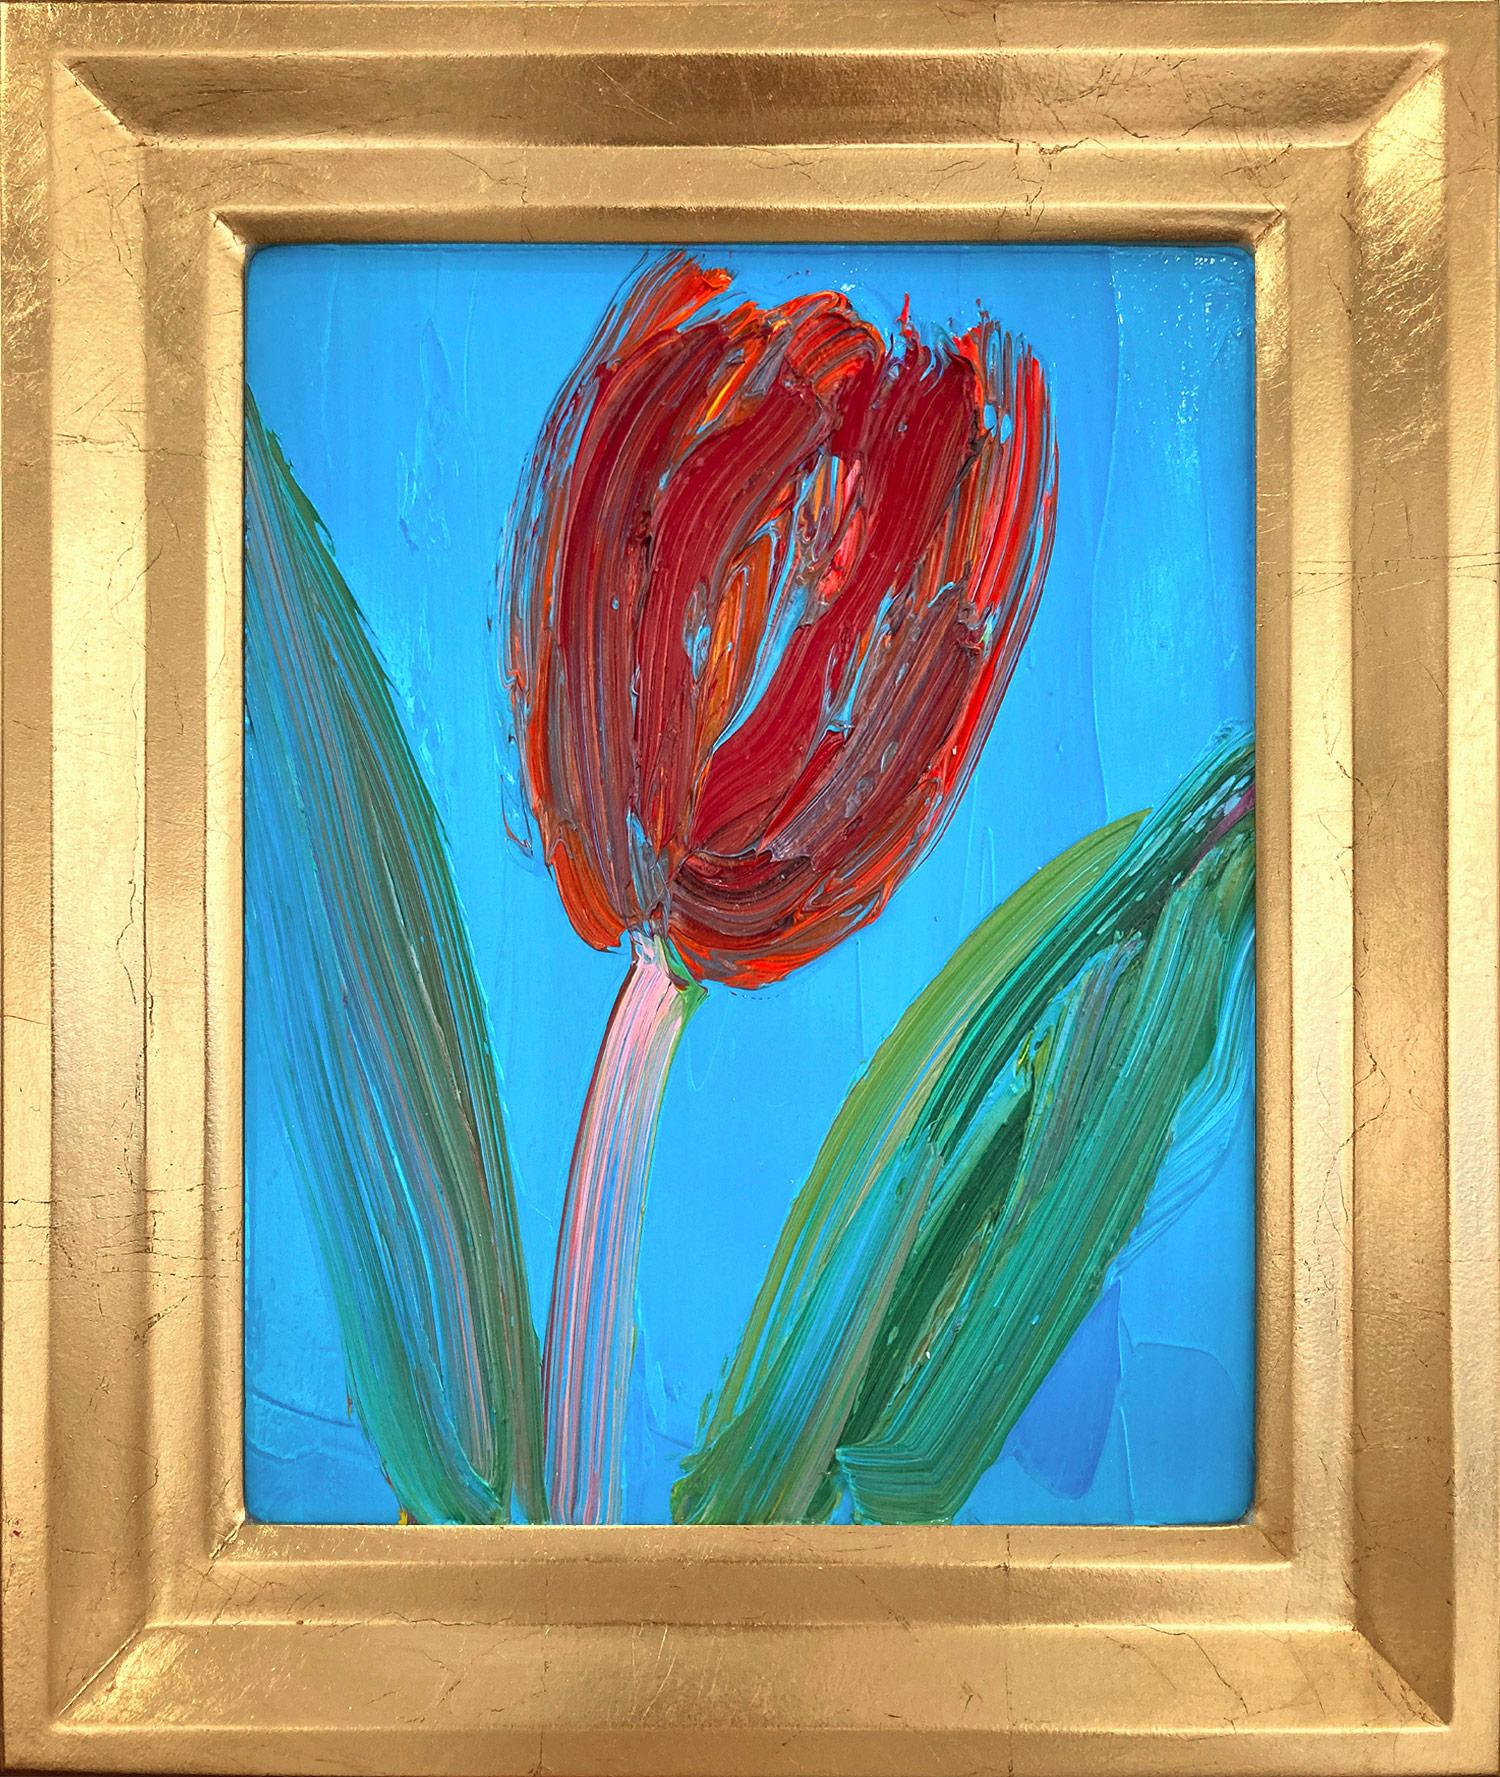 Abstract Painting Hunt Slonem - « Pink Stem », tulipe rouge sur fond bleu céruléen clair, peinture à l'huile encadrée